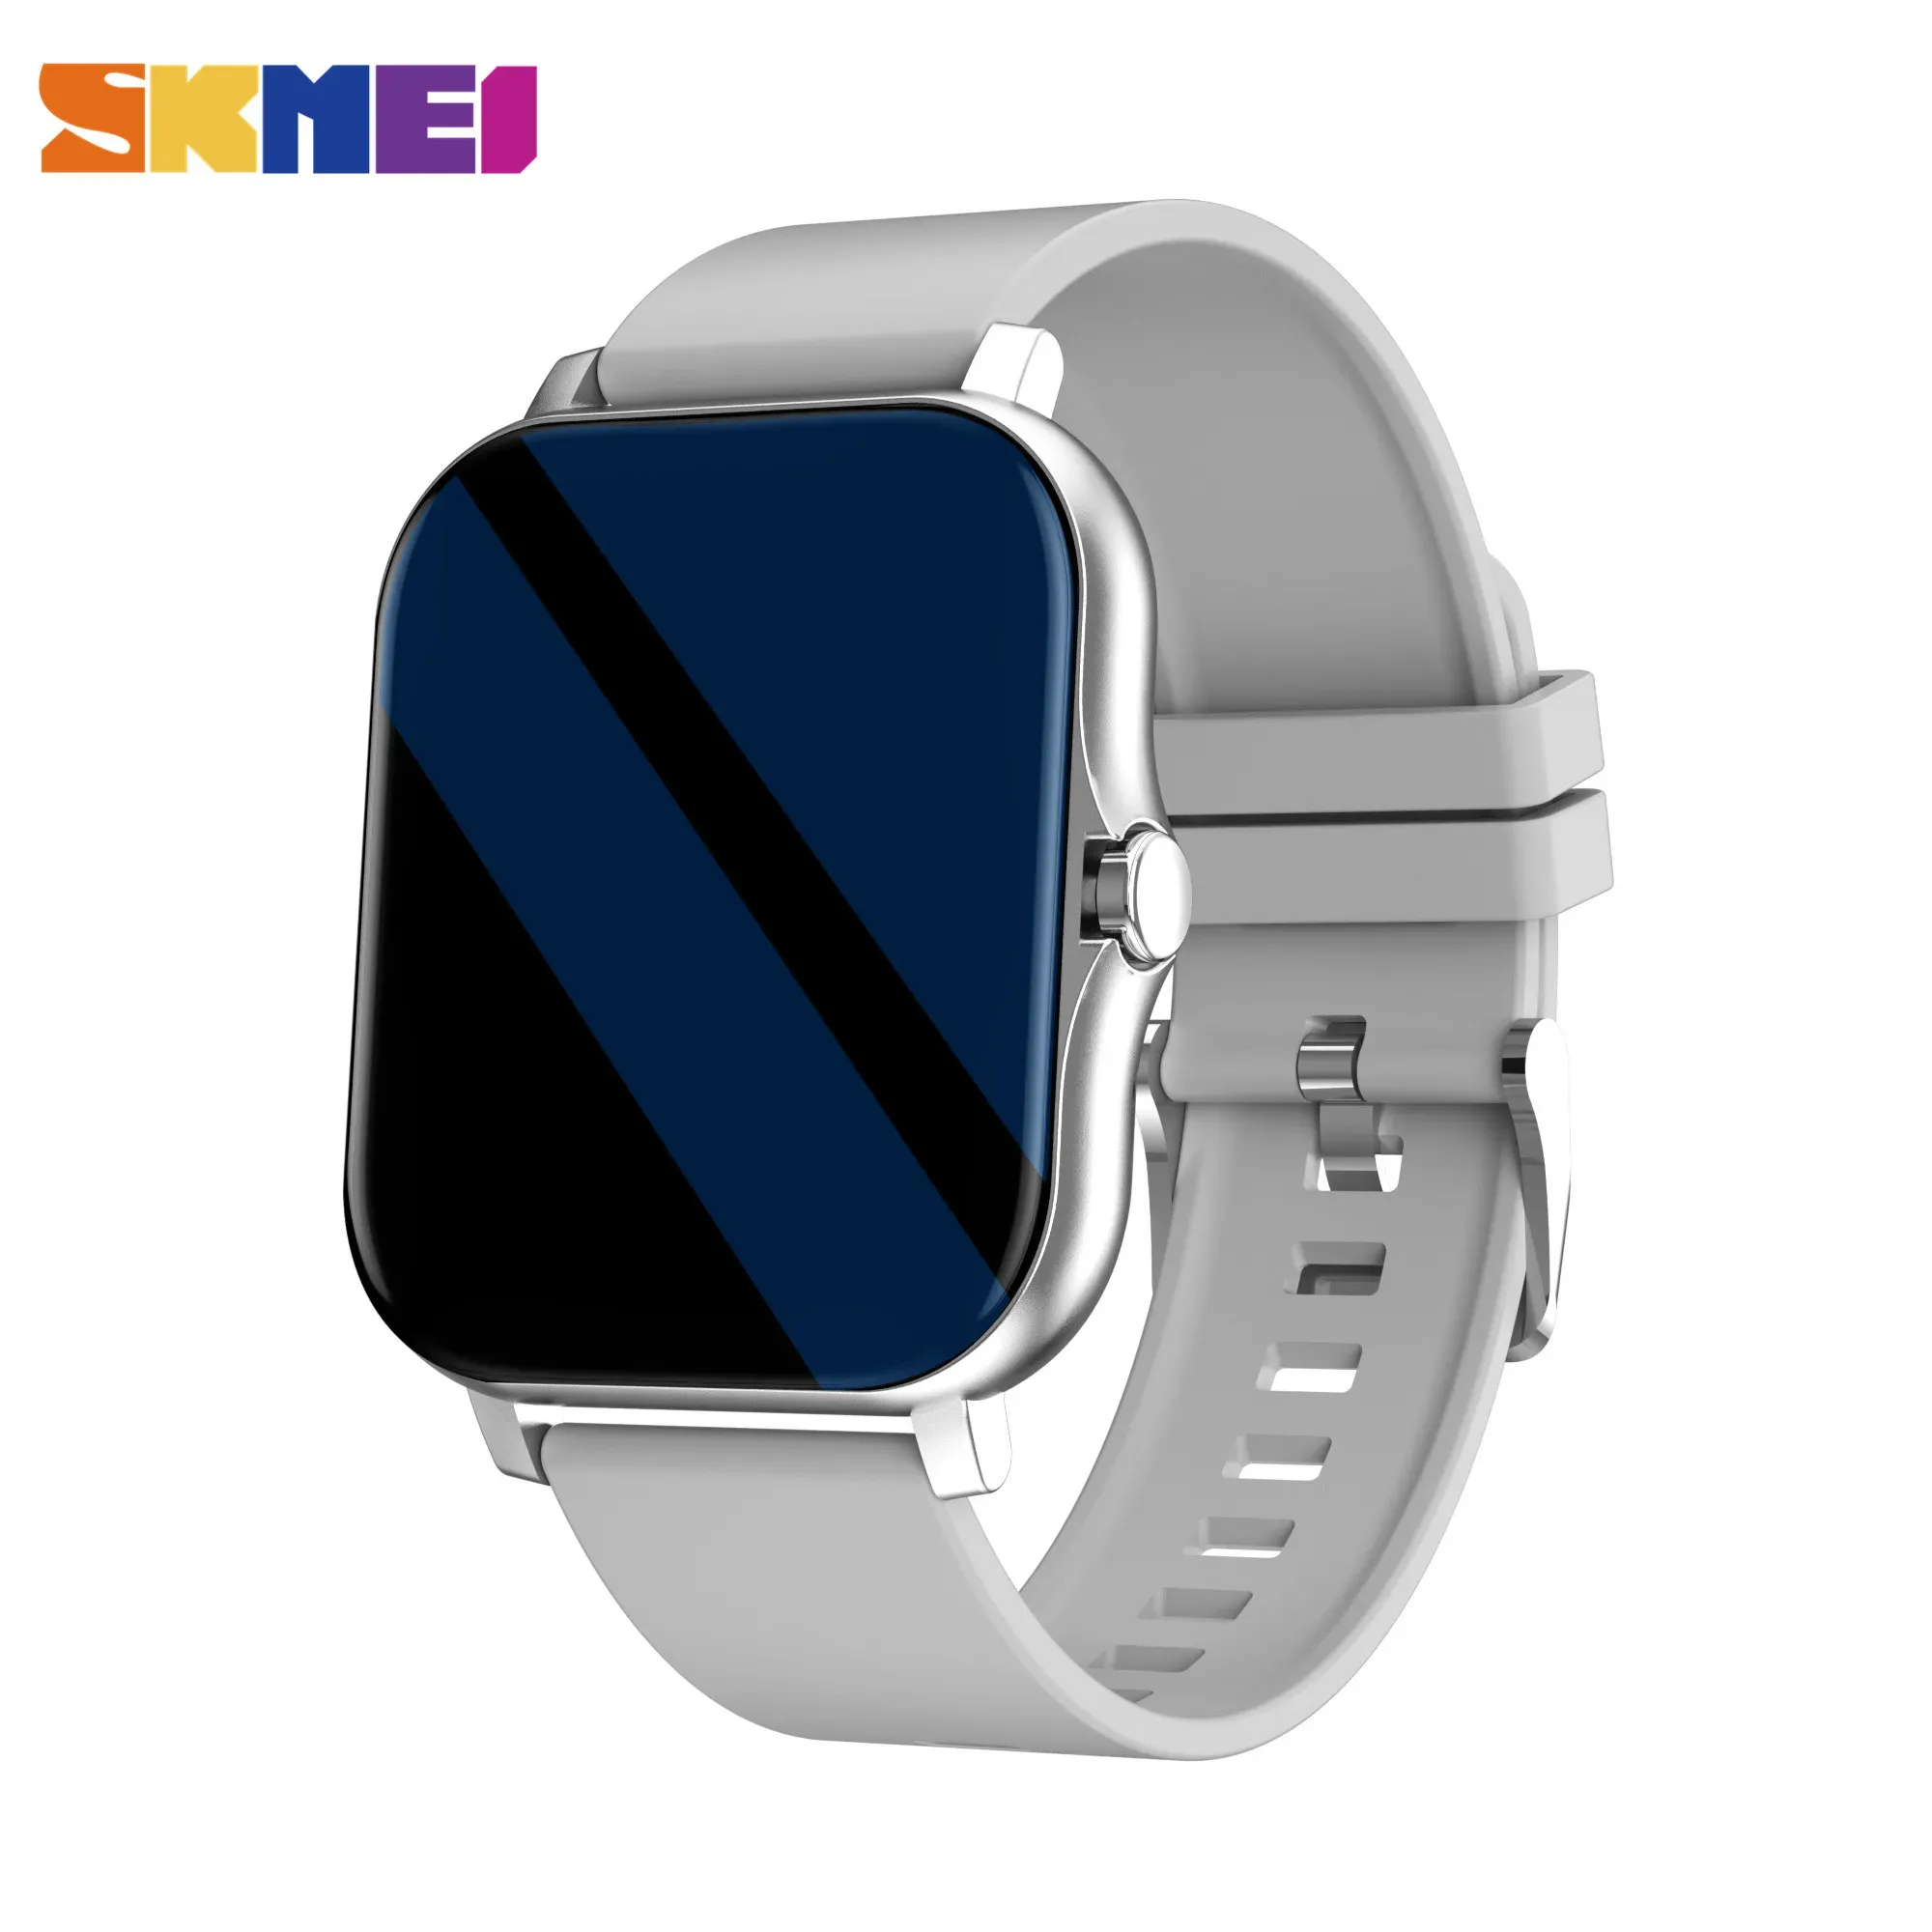 Orologi SKMEI 1.69 pollici Smart Watch Uomo Donna Frequenza cardiaca Fitness Tracker Orologio personalizzato fai da te Smartwatch per Android ios xiaomi huawei